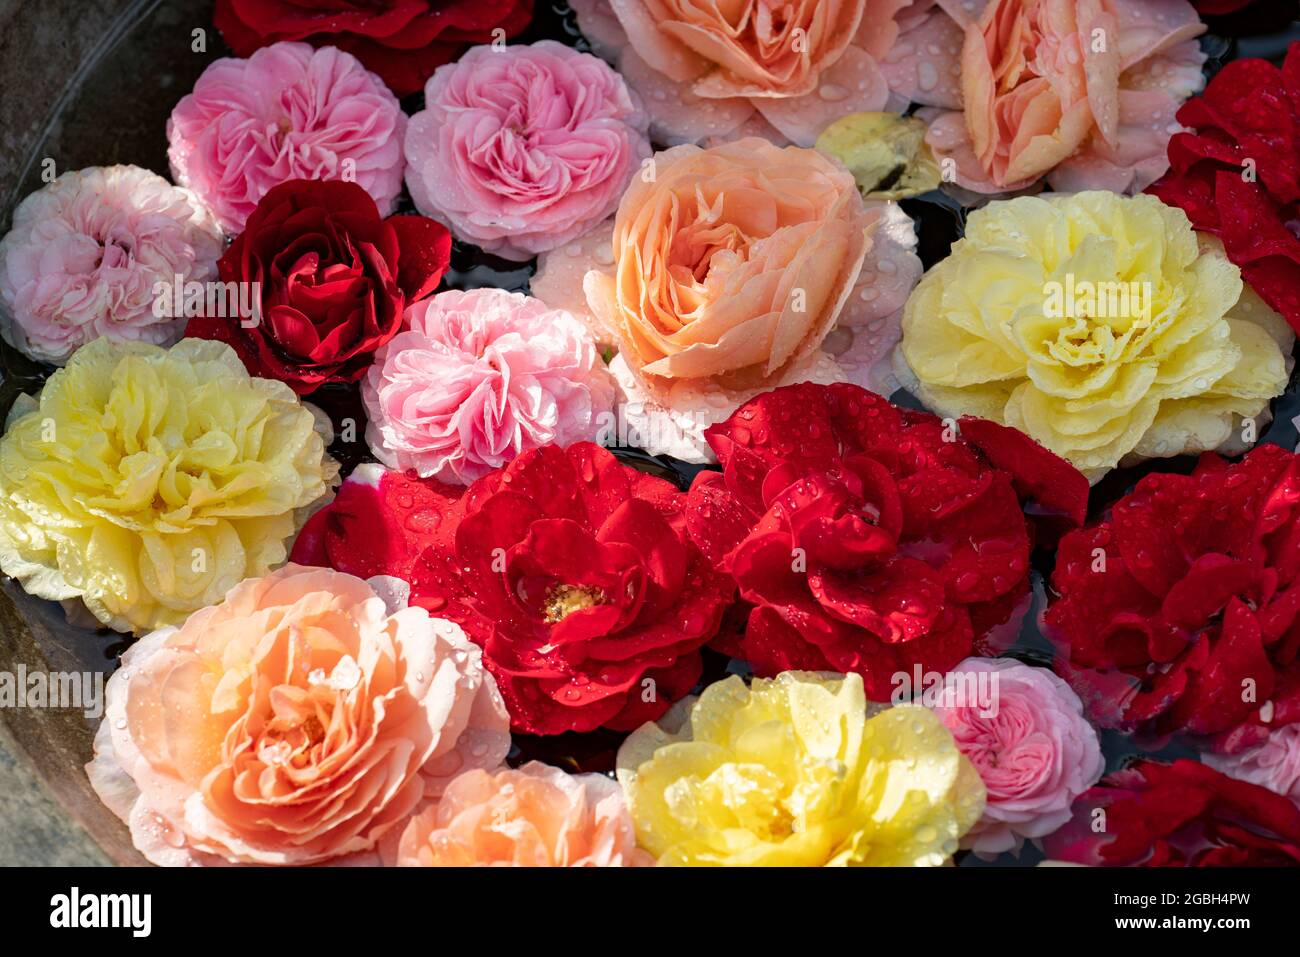 Botanica, bacino con fiori di rose, PER IL SALUTO / CARTOLINA-USO IN GERM.SPEAK.C ALCUNE RESTRIZIONI POSSONO APPLICARSI Foto Stock